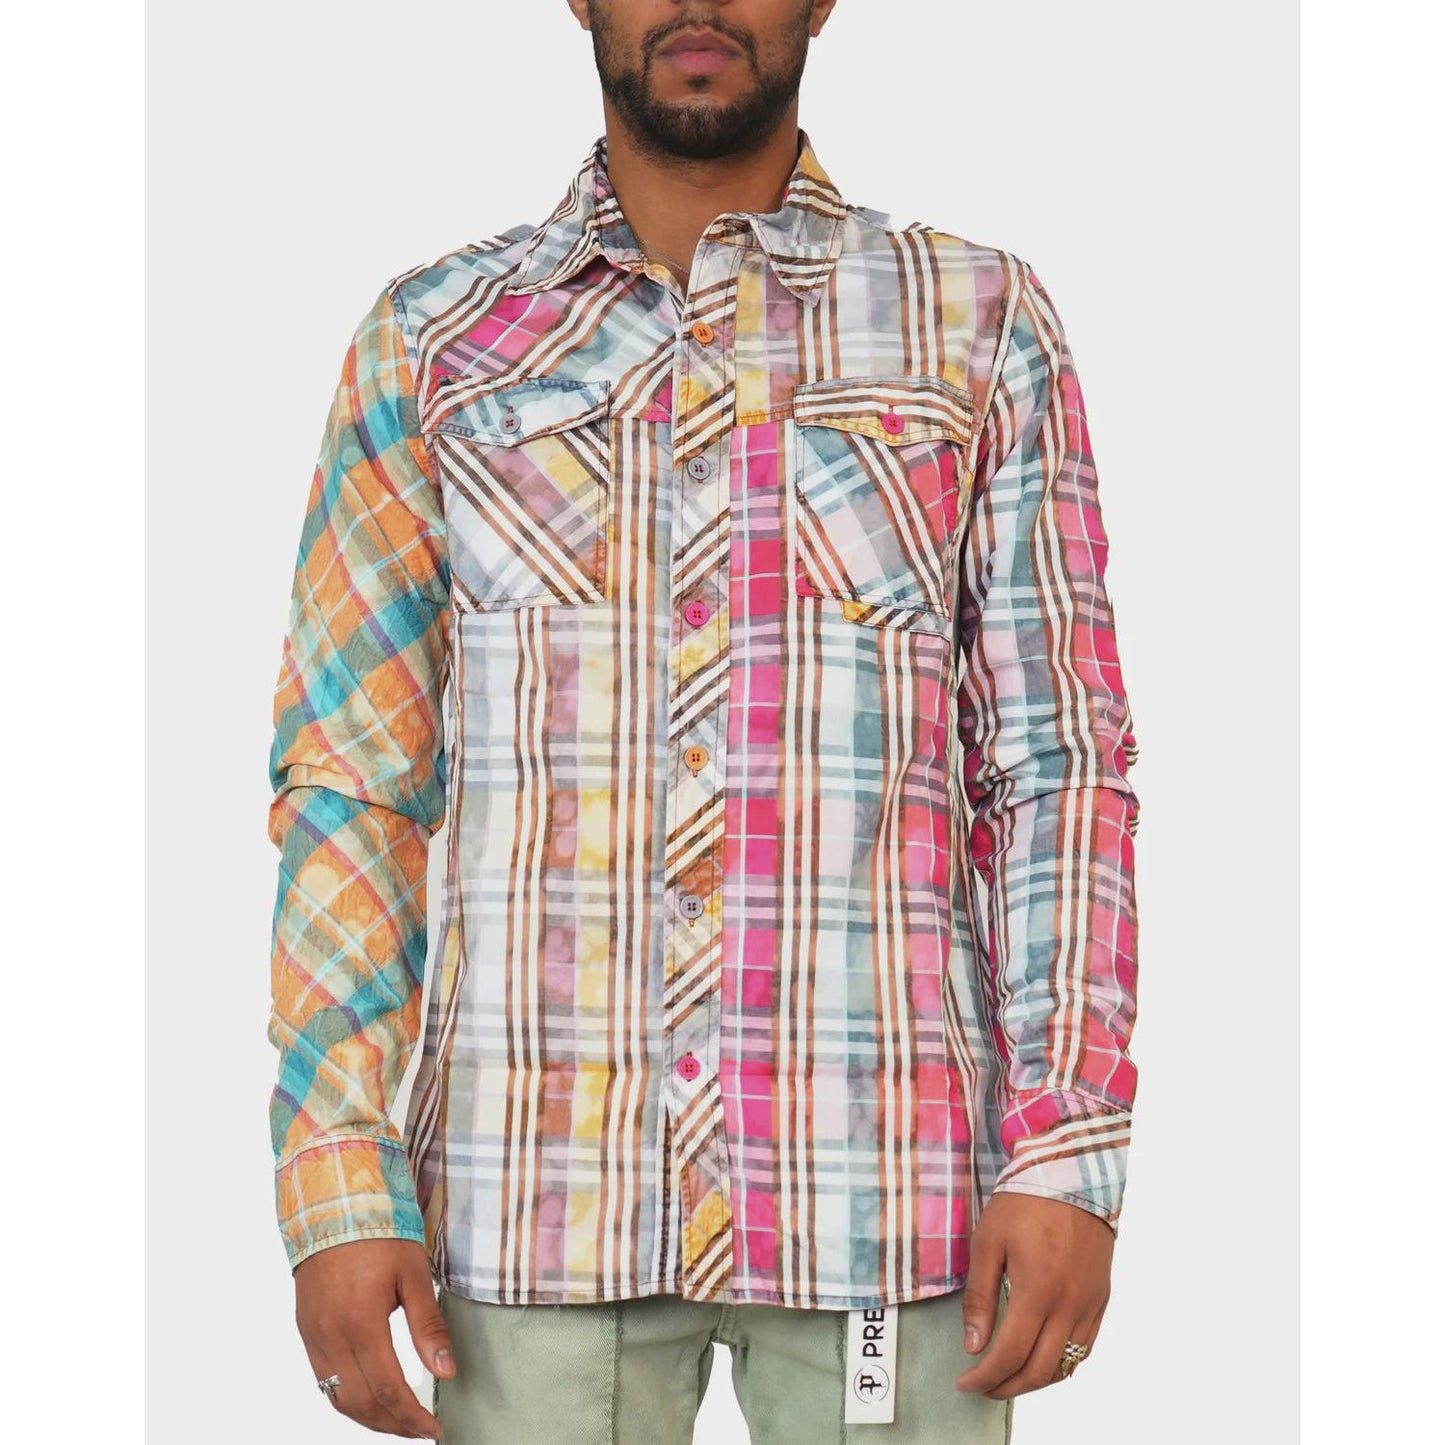 PREME Wanderer Knit Multi Color Woven Flannel Button Up (PR-WT-053)